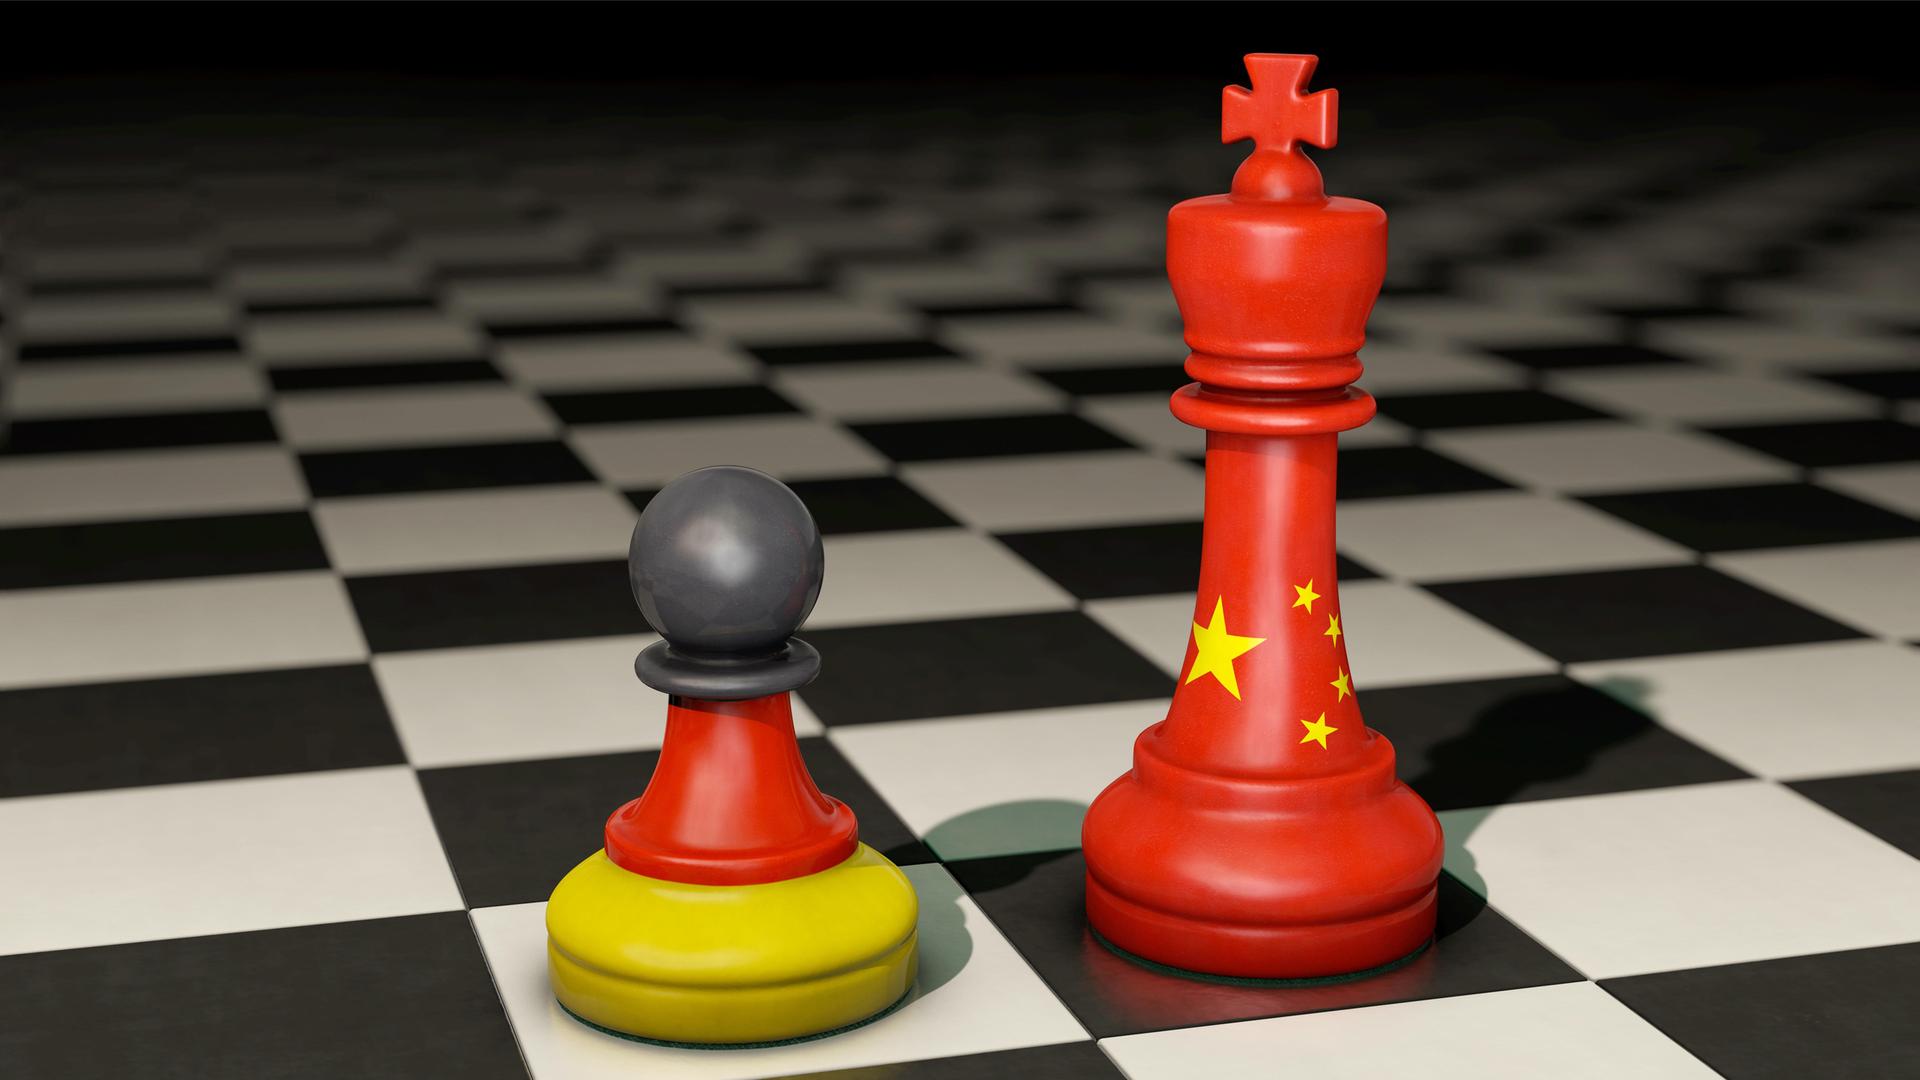 Symbolbild zum Thema Macht, Einfluss und Kräfteverhältnis zwischen Deutschland und China